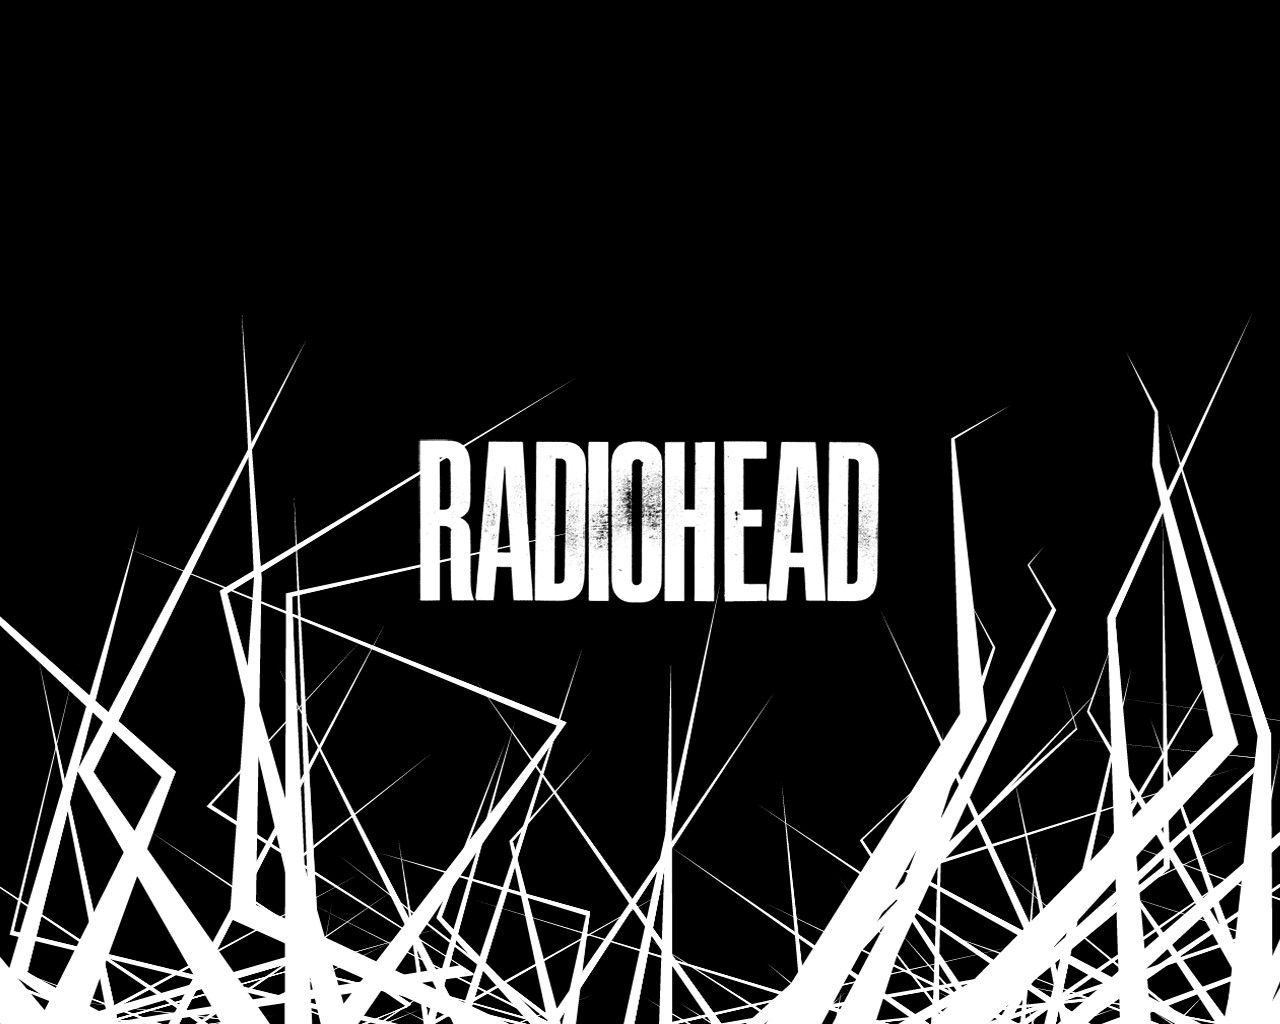 Radiohead Wallpaper | 1366x768 | ID:19612